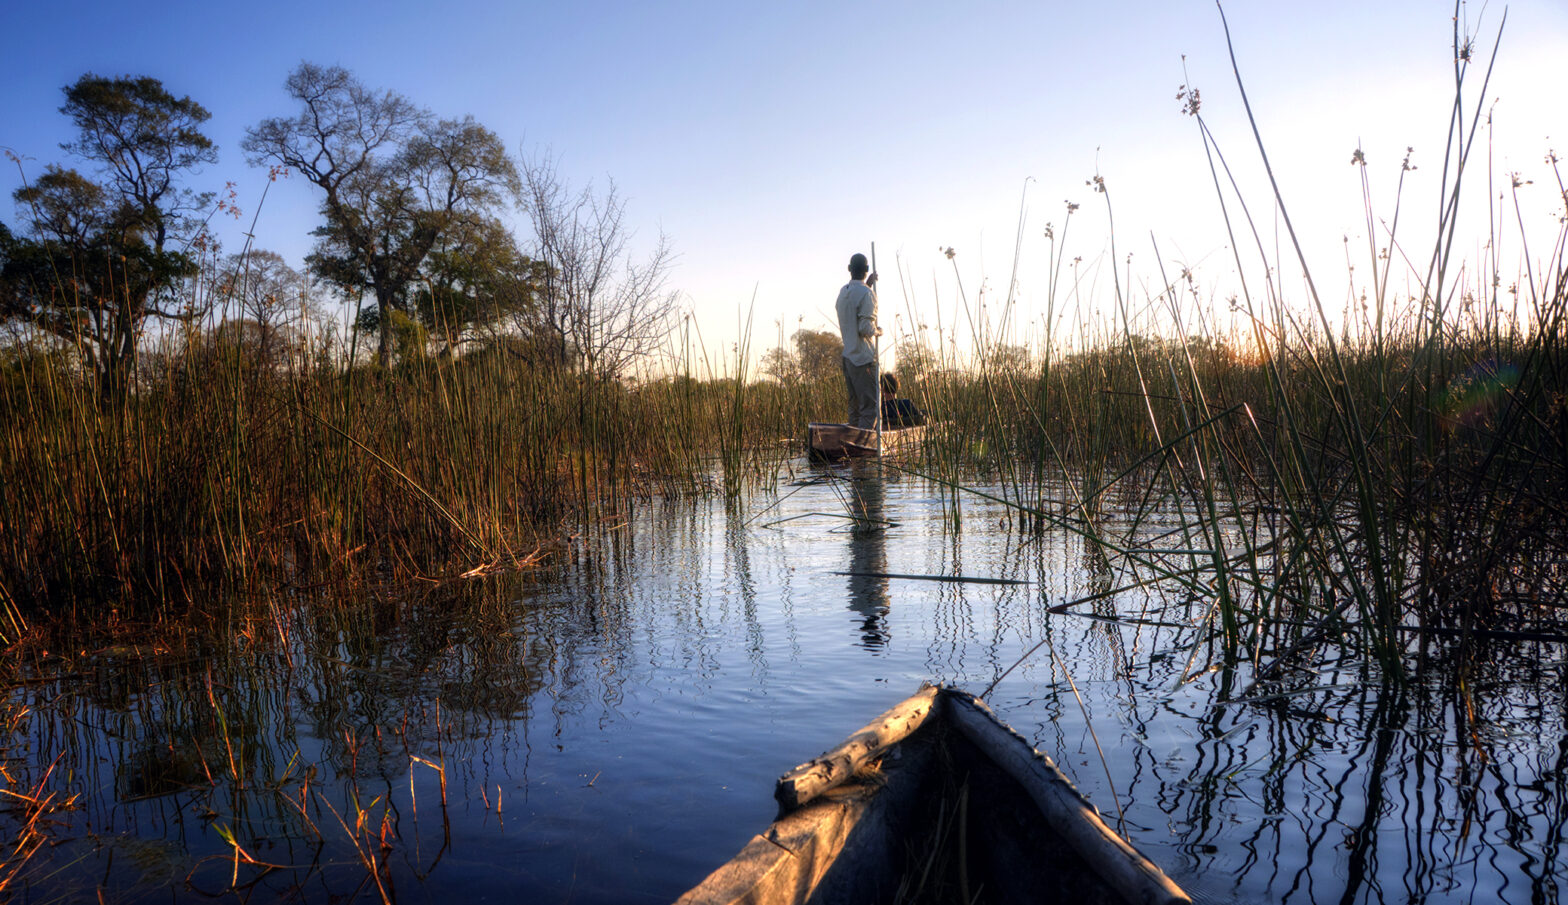 Mokoro in the Okavango Delta, Botswana